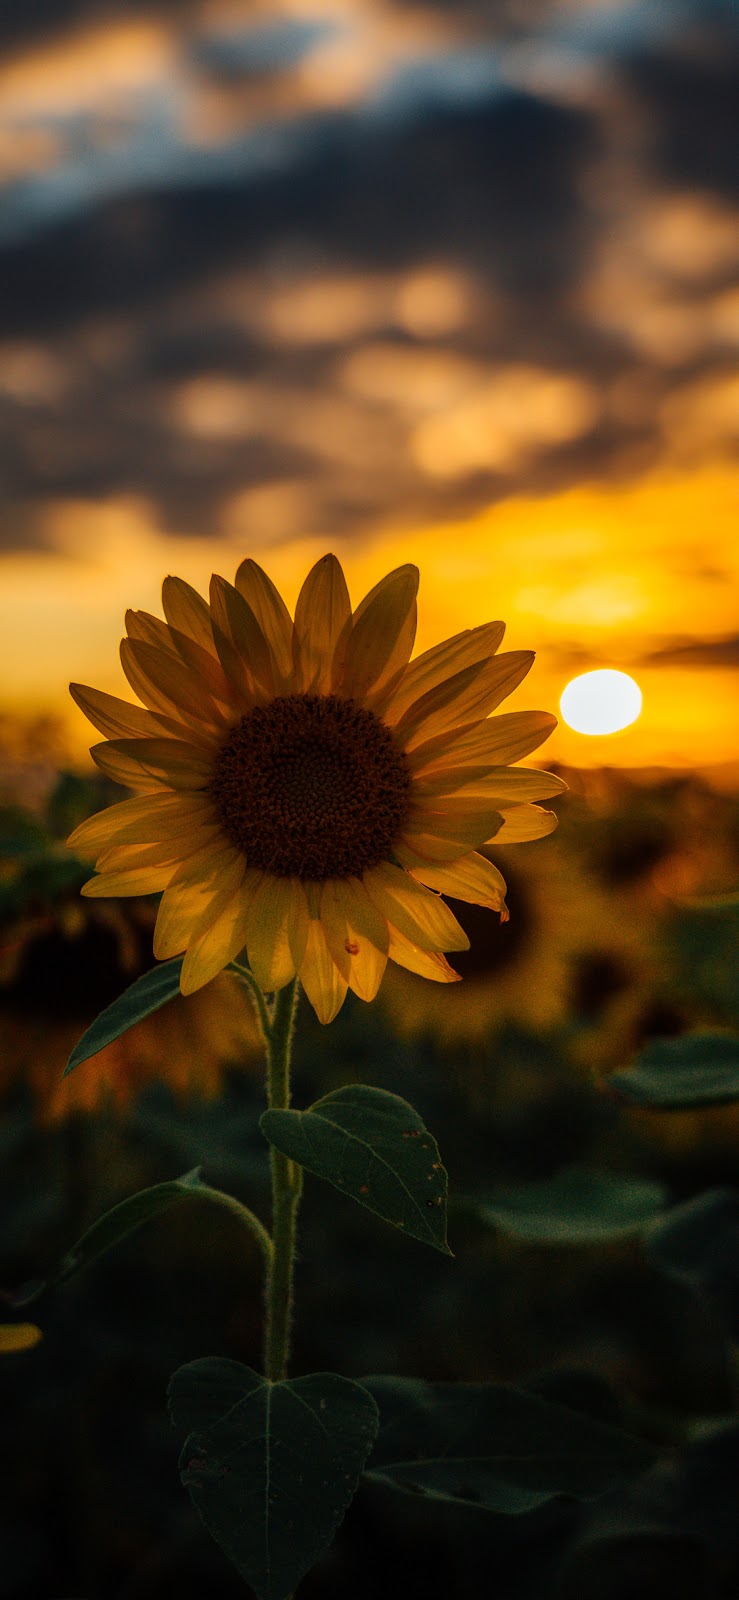 Sunflower wallpaper iphone x